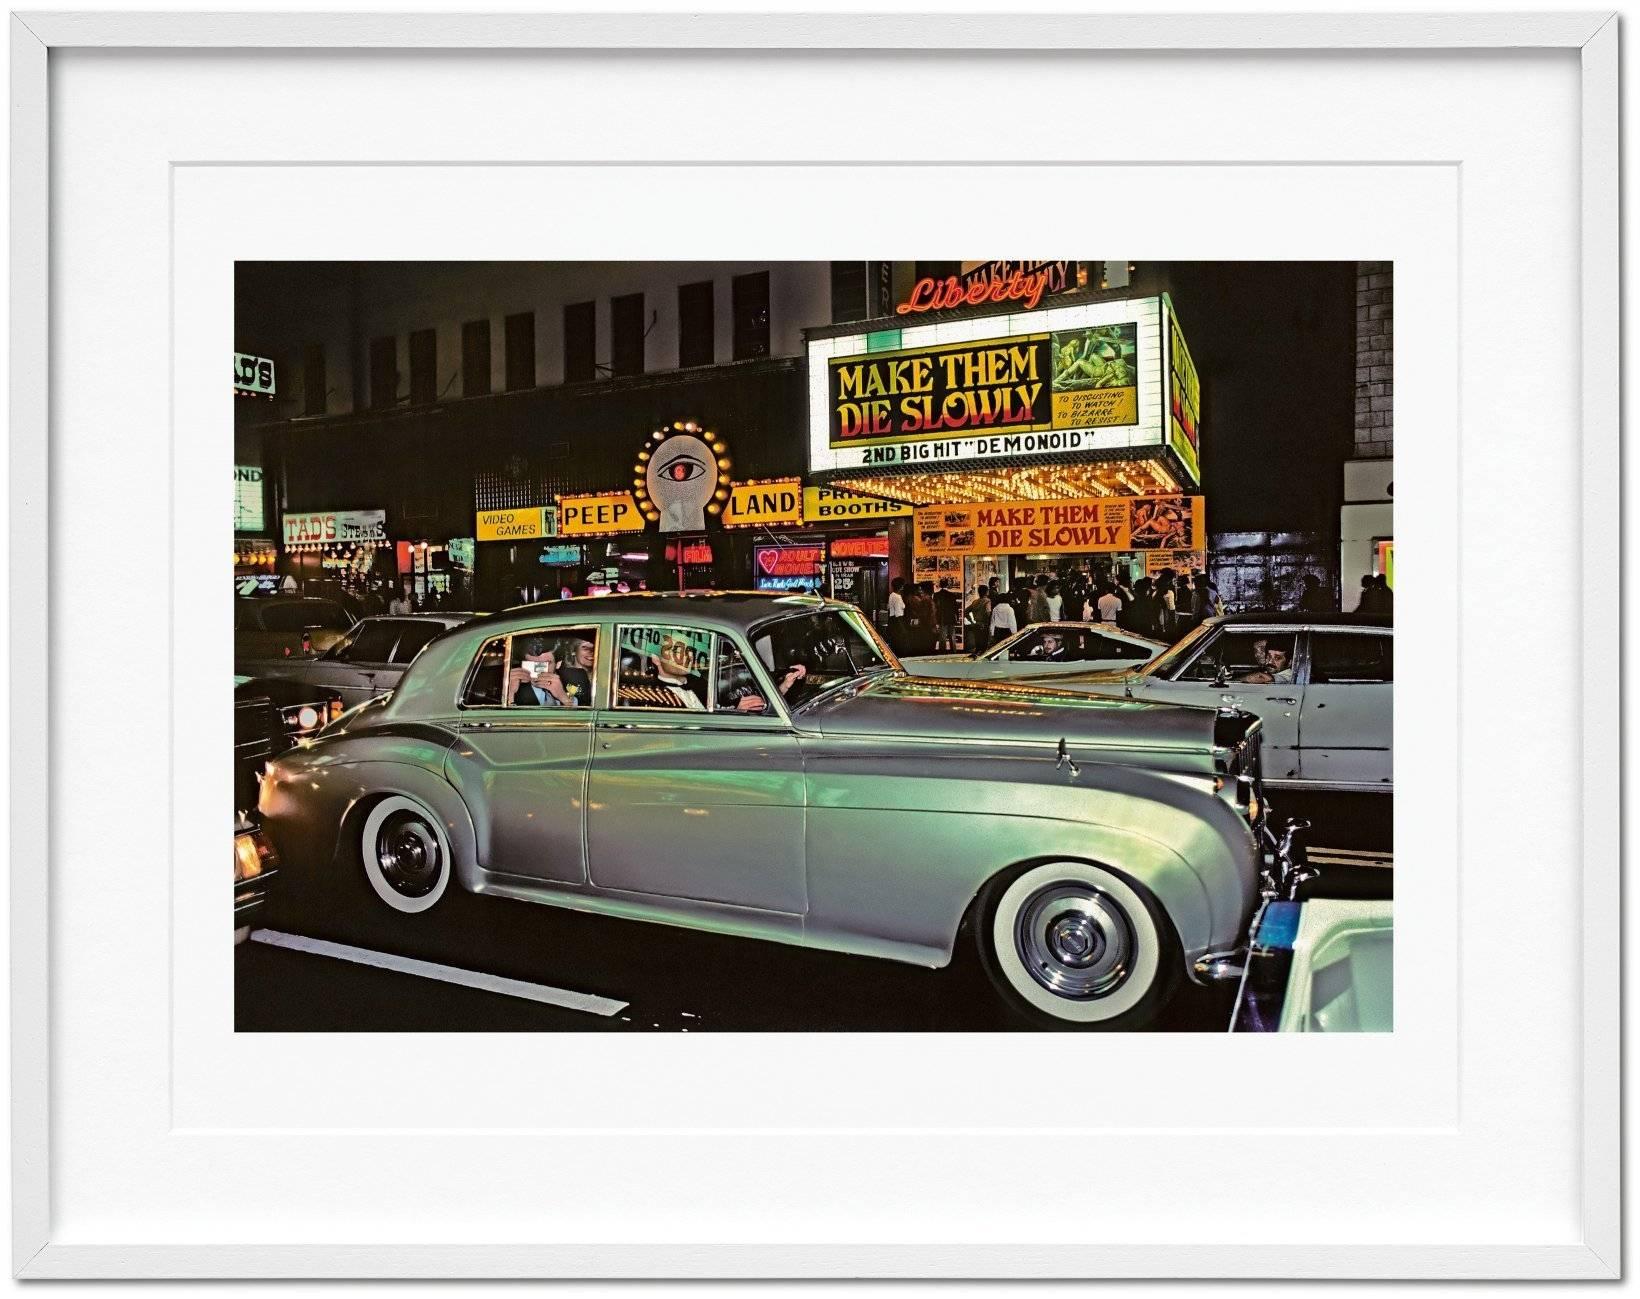 Une édition d'art majestueuse présentant la première rétrospective majeure de la carrière de Marvin E. Newman, avec quelque 170 images présentées ainsi qu'un tirage photographique signé, 42nd Street, 1983, une scène de drame urbain